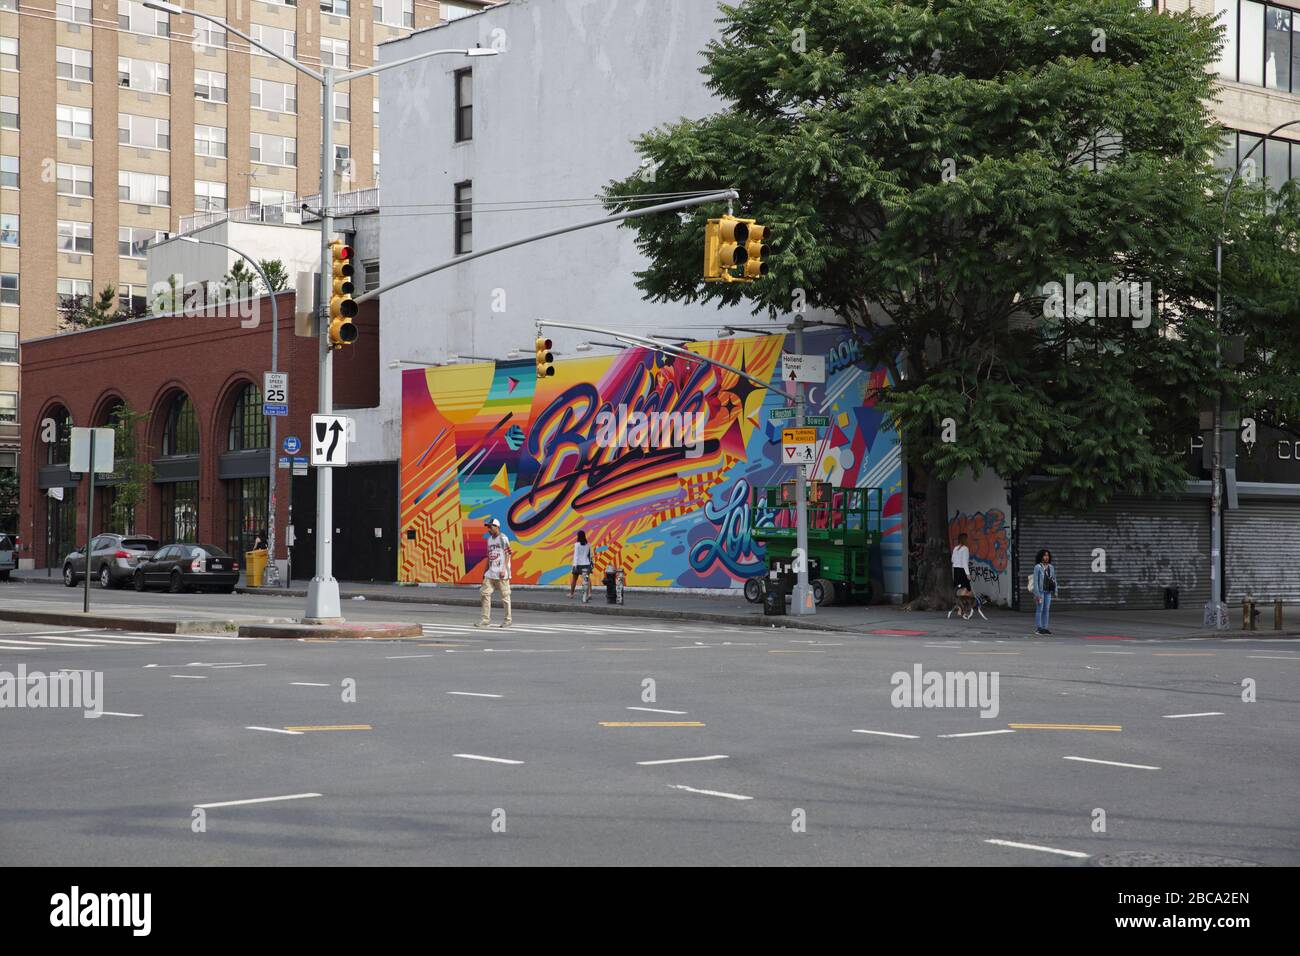 Wandgemälde von Queen Andrea mit dem Titel Believe on the Bowery Mural Wall an der Kreuzung von Bowery und Houston Street, New York. Beli Stockfoto